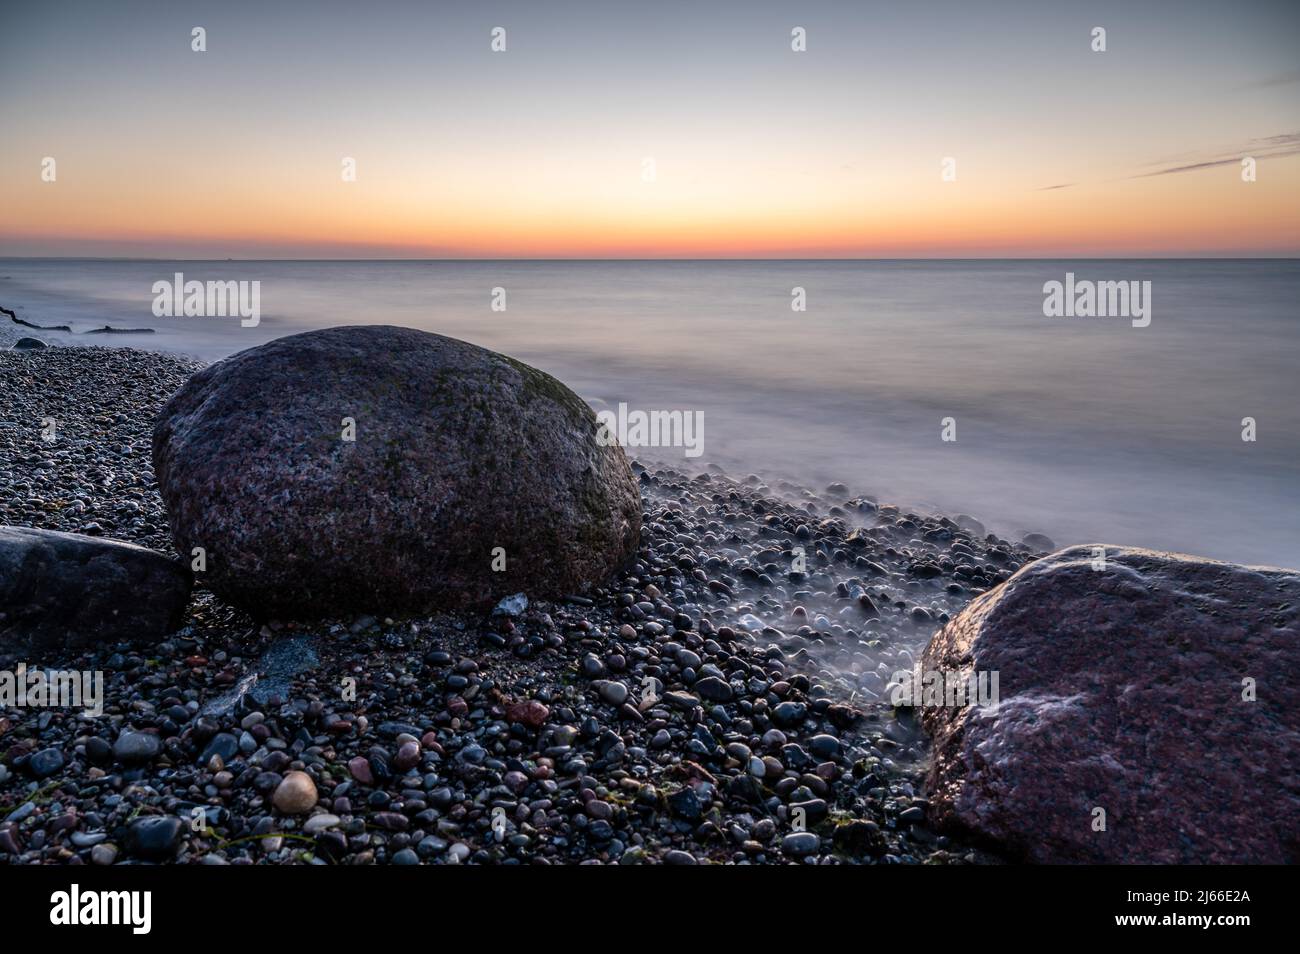 Beratung von grossen Felsbrocken am steinigen Strand der Ostsee BEI Sonnenuntergang, Ostseebad Nienhagen, Mecklenburg-Vorpommern Banque D'Images